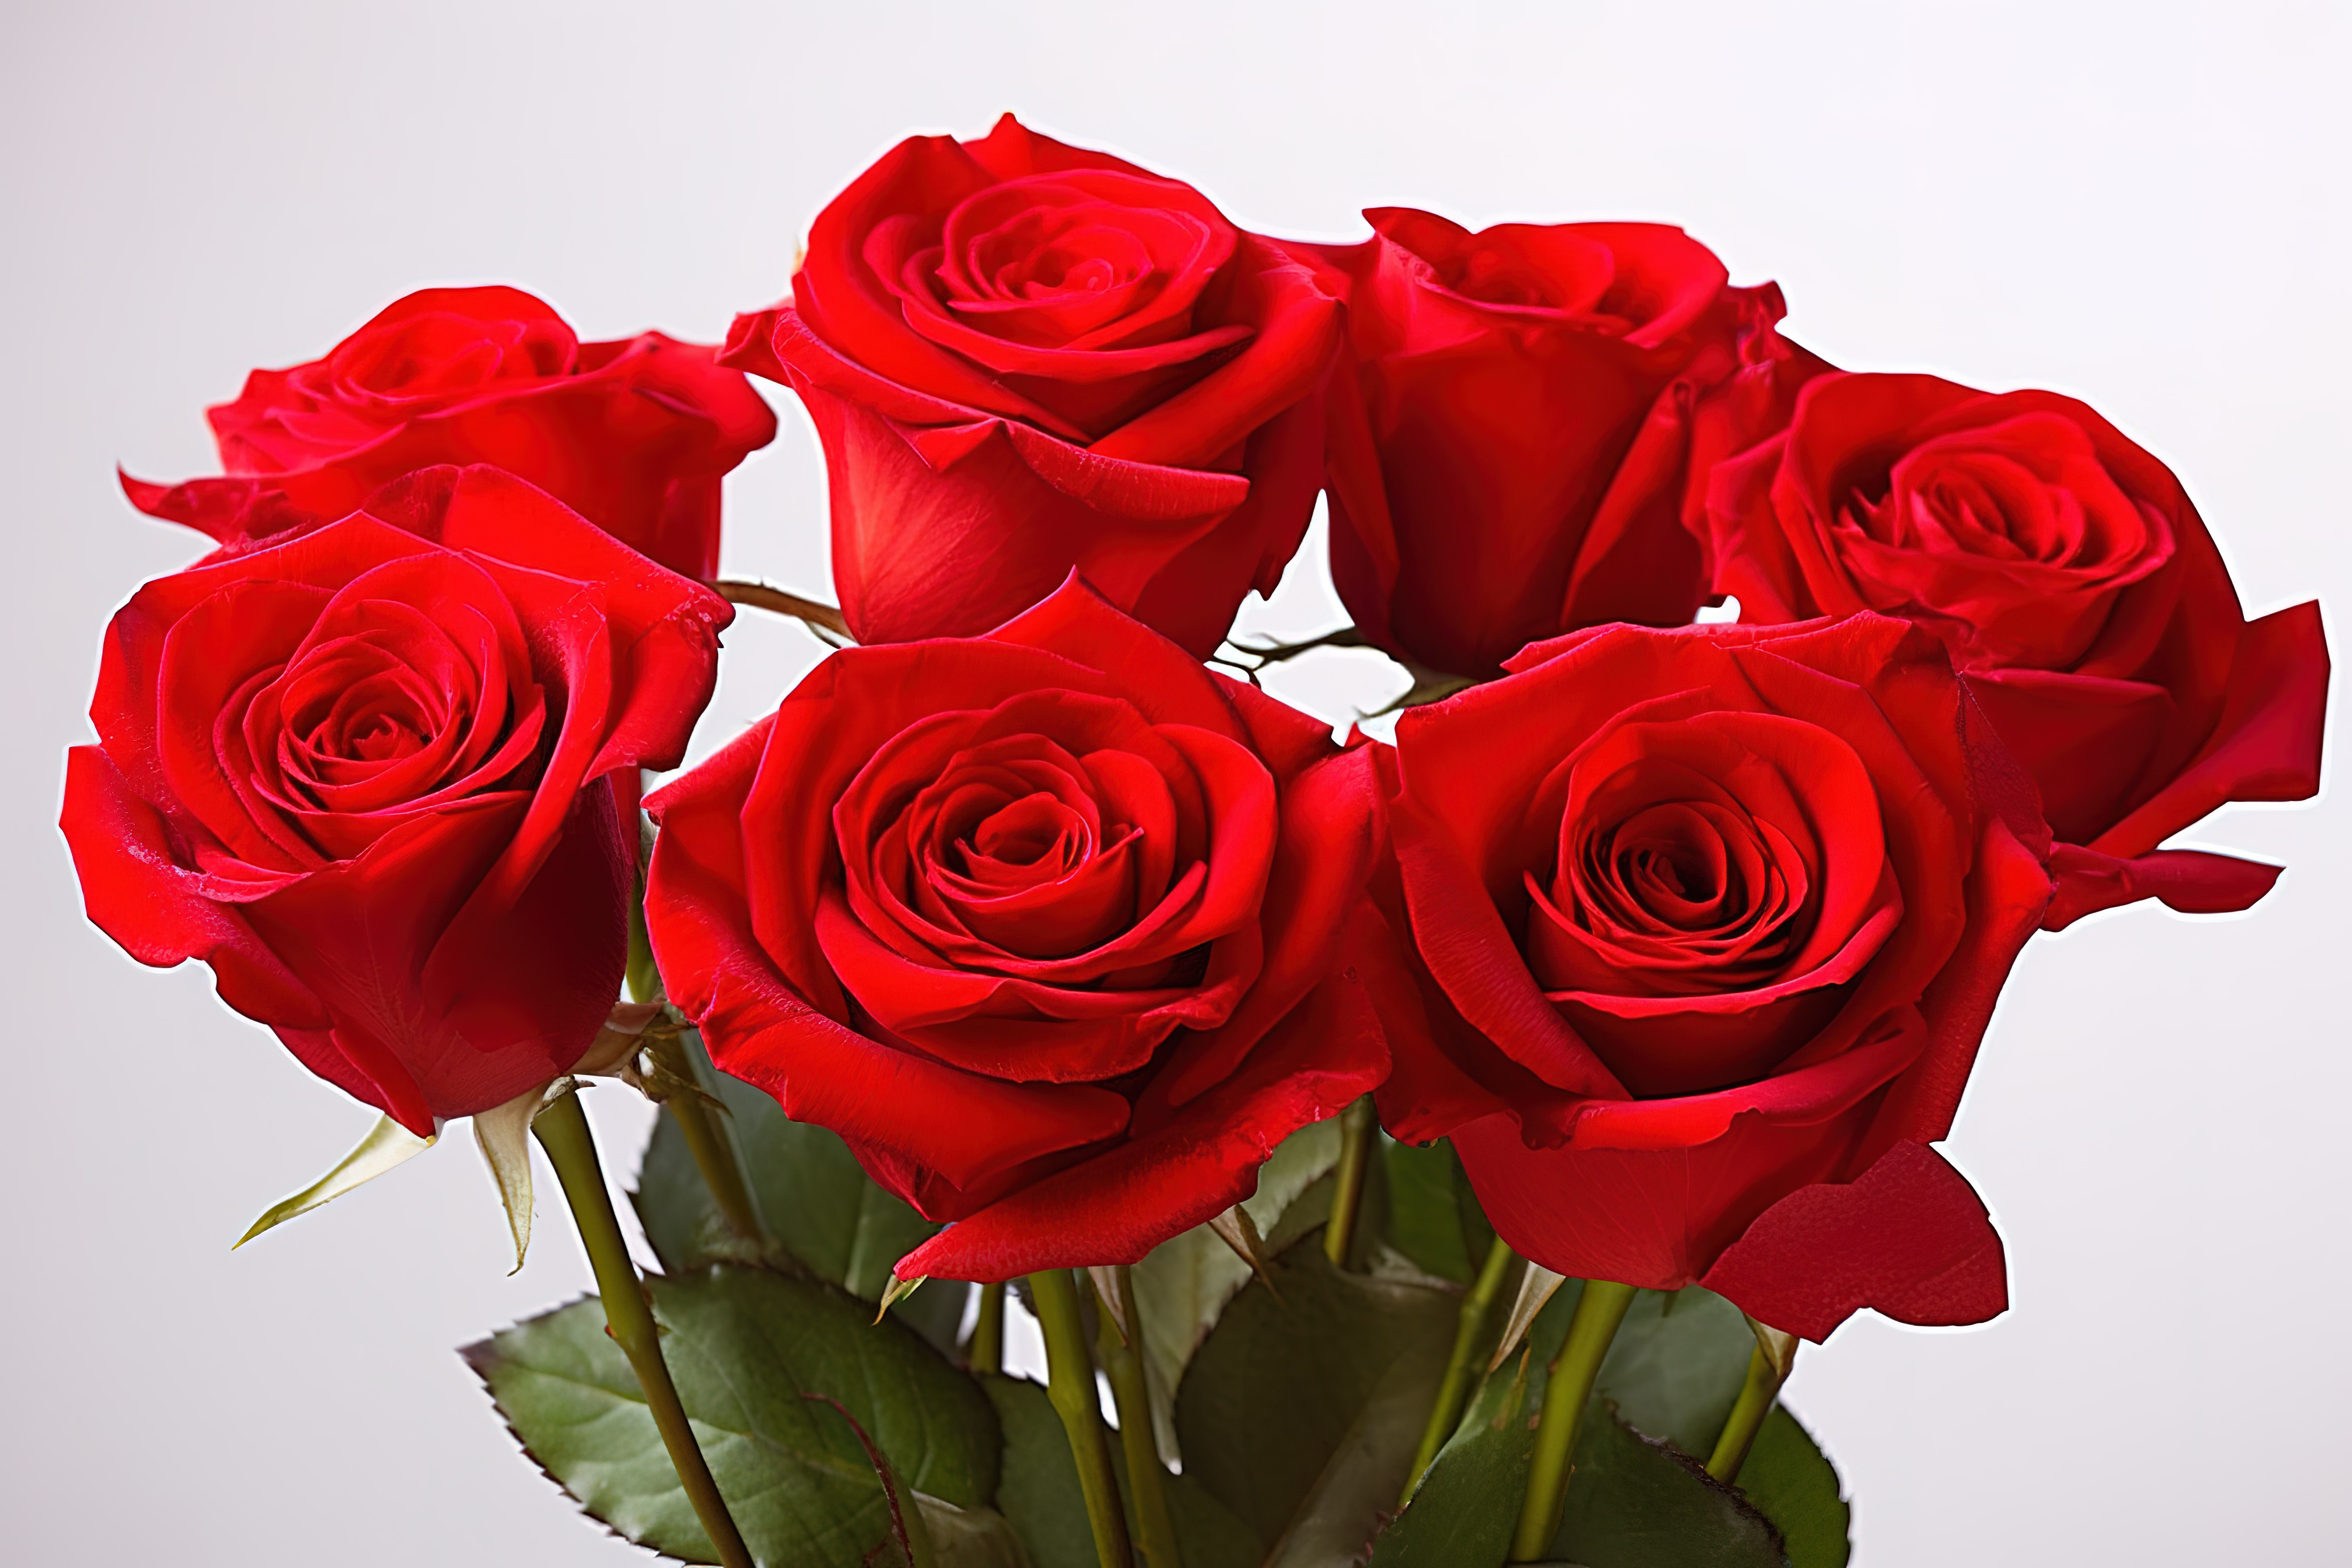 6朵红玫瑰插在花瓶里图片